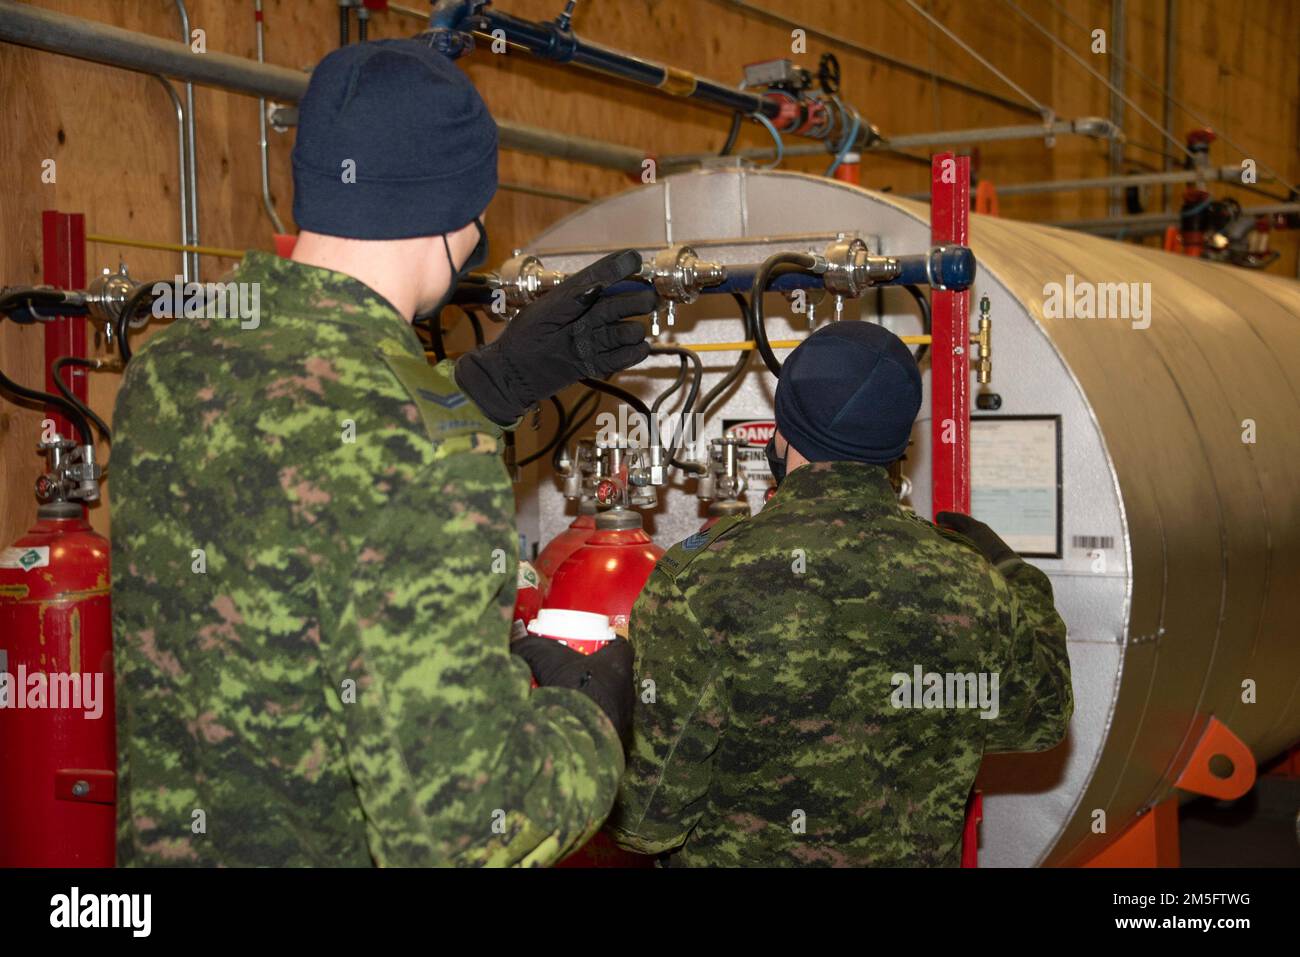 Royal Canadian Air Force Fire Fighter, il sergente Jeff Hawley spiega come funzionano gli allarmi e i sensori di calore nell'hangar per l'equipaggio addetto alla manutenzione, il 15 marzo 2022, presso la Forward Operating Location di Yellowknife, territori nordoccidentali. NORAD Operation NOBLE DEFENDER 22-2 è un'operazione di difesa aerea che si svolge dal 14 al 17 marzo 2022 e che coinvolge una serie di aerei militari della Royal Canadian Air Force (RCAF) e dell'aviazione militare degli Stati Uniti. Il personale e gli aerei sono basati fuori dalla stazione di allarme delle forze canadesi, Nunavut; Whitehorse, Yukon; Yellowknife, Territori nordoccidentali; e 5 Wing Foto Stock